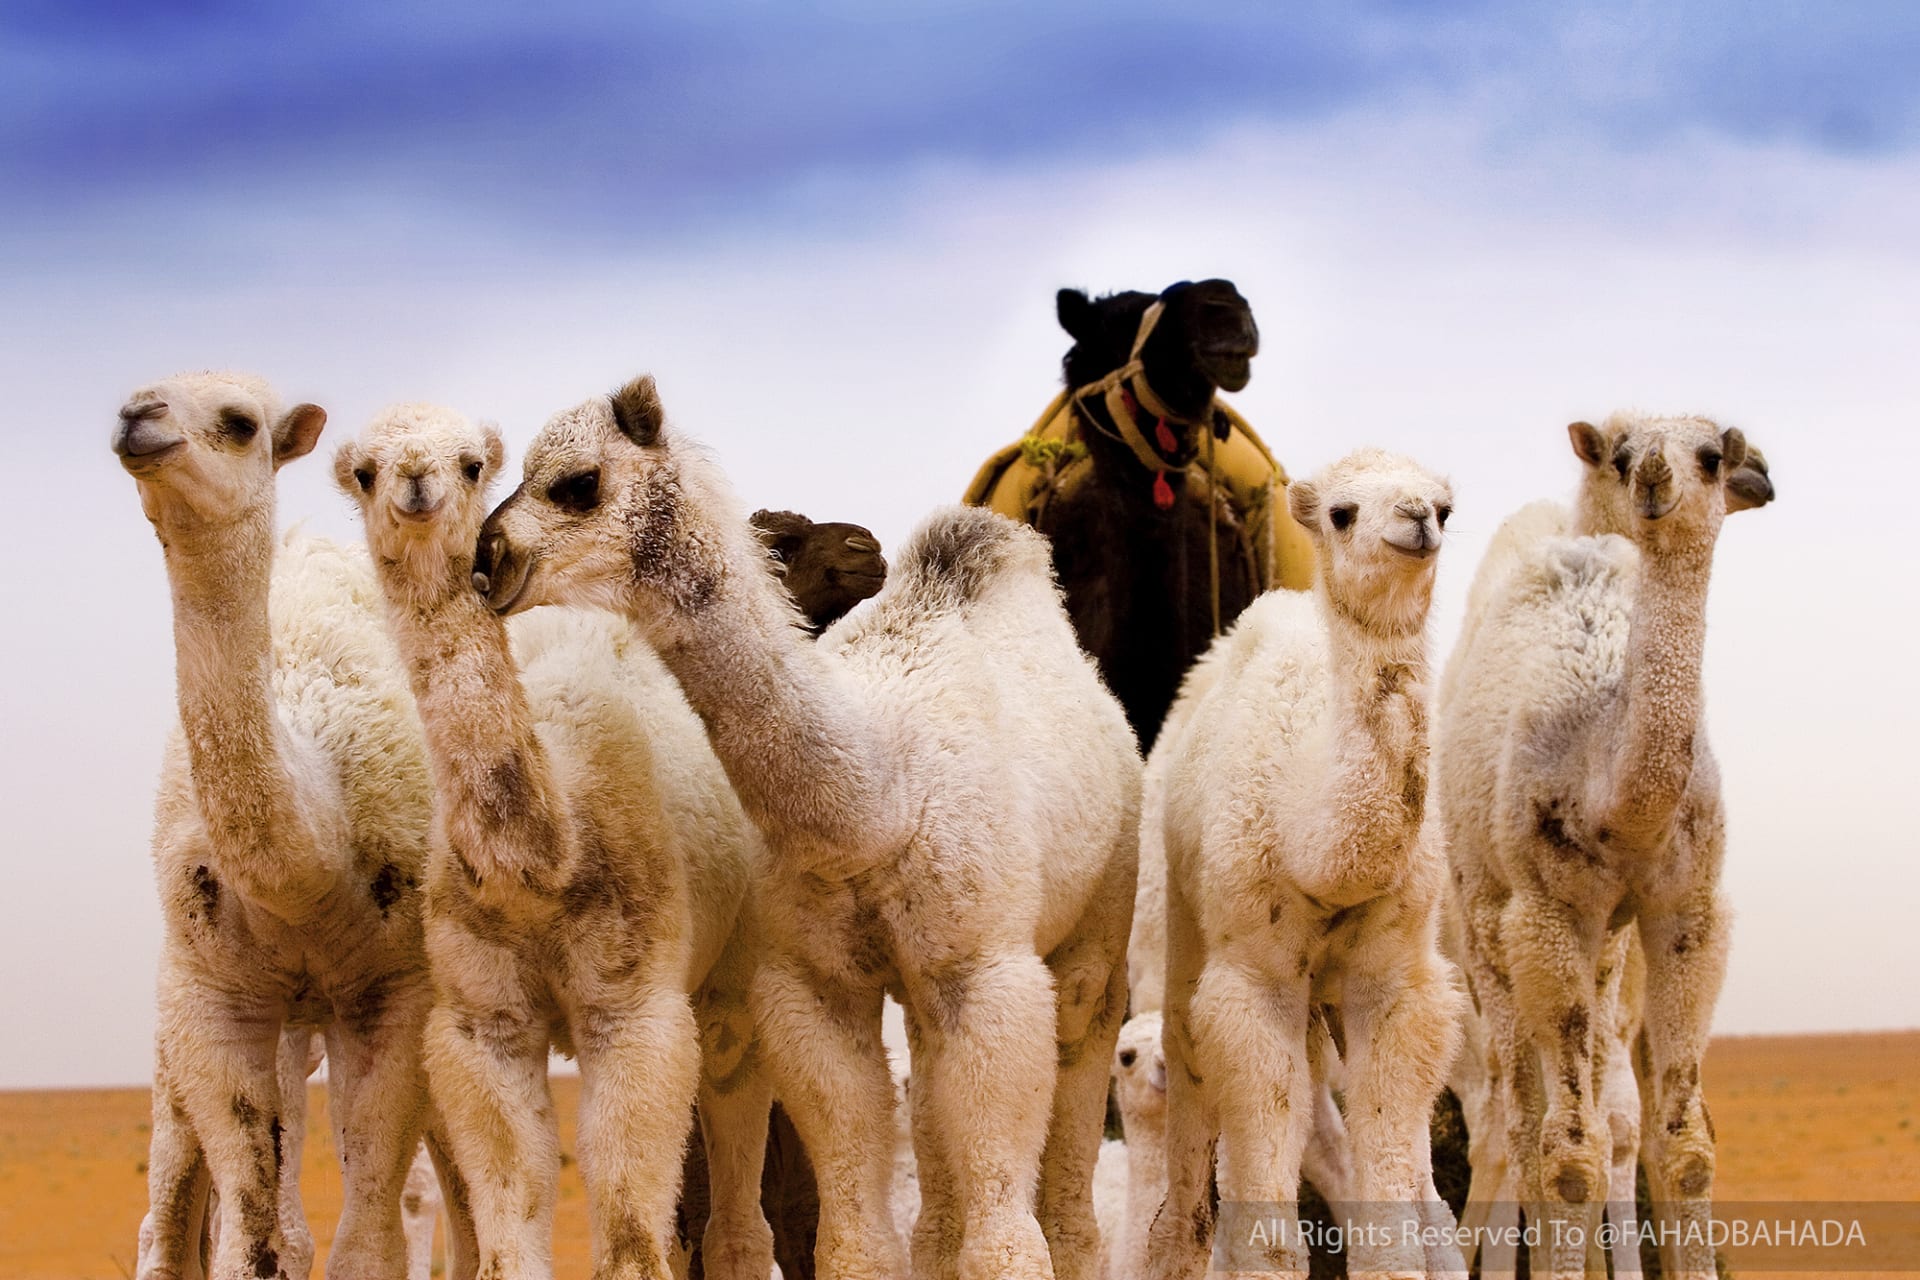 4 ألوان في إطار واحد.. مصور يسرد كواليس هذا المشهد المميز في السعودية